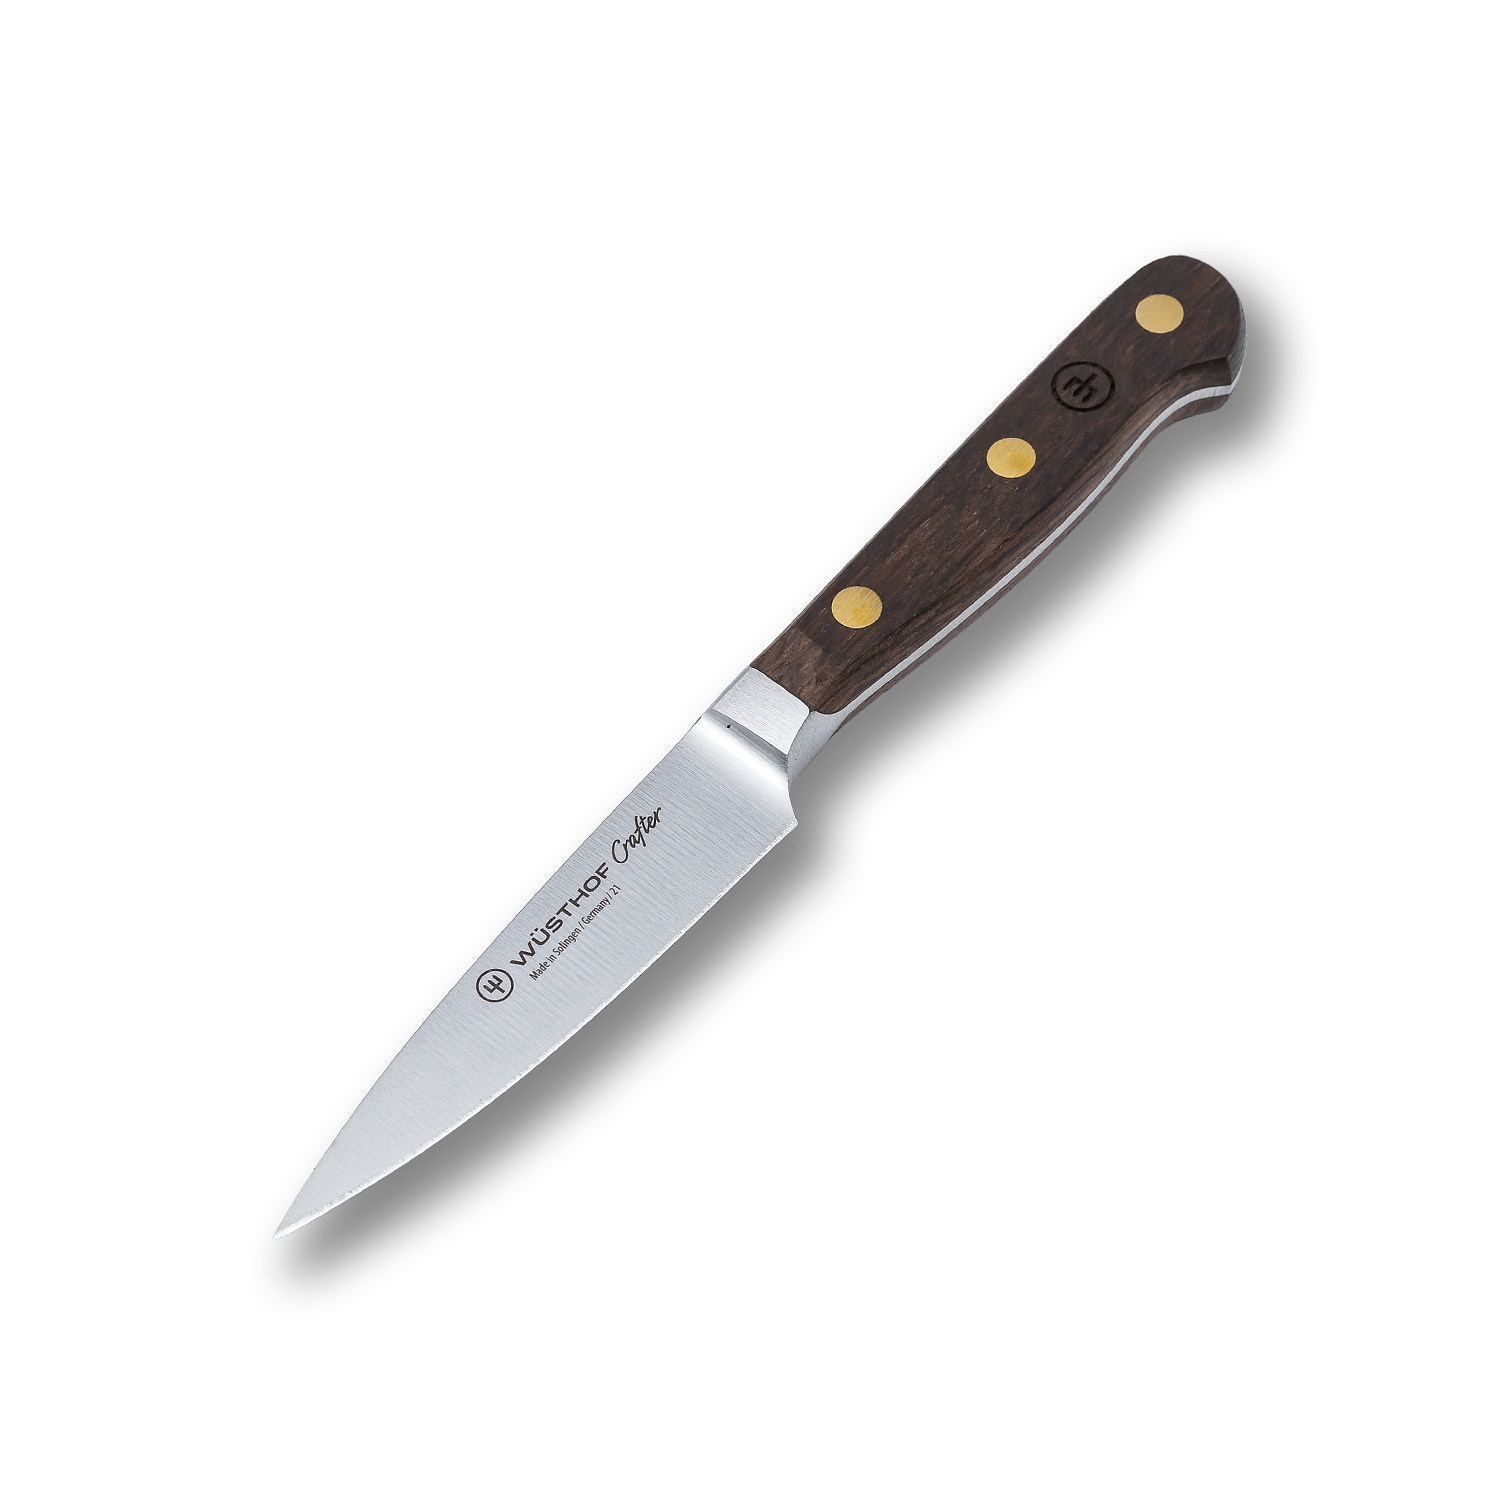 Кухонный нож для чистки овощей и фруктов Wuesthof Crafter 9 см, сталь X50CrMoV15, 1010830409